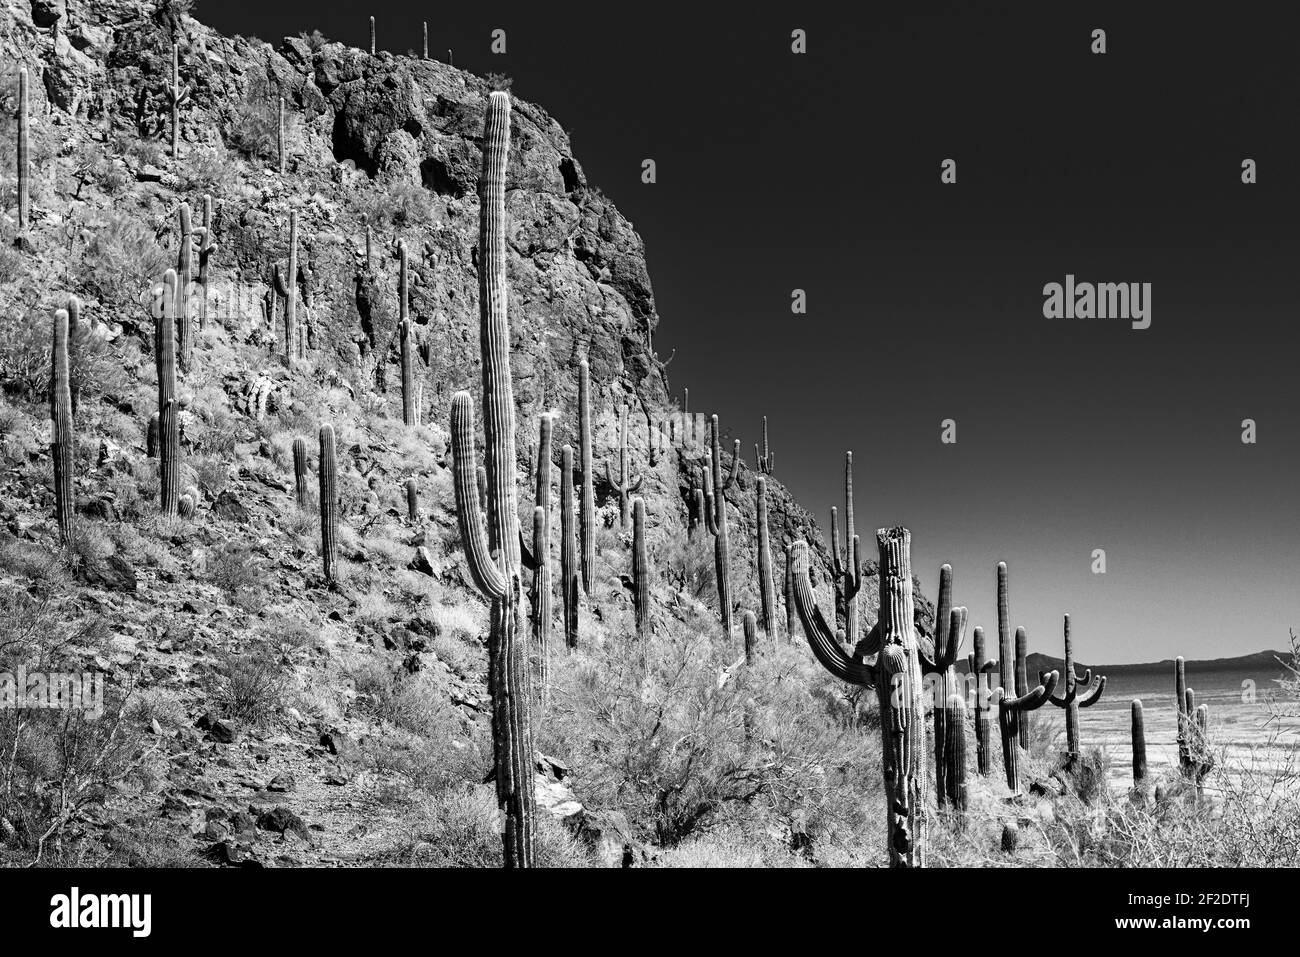 Une falaise rocheuse couverte de cactus Saguaro avec un lointain Vue sur un col de montagne dans le désert de Sonoran à Sud de l'Arizona Banque D'Images